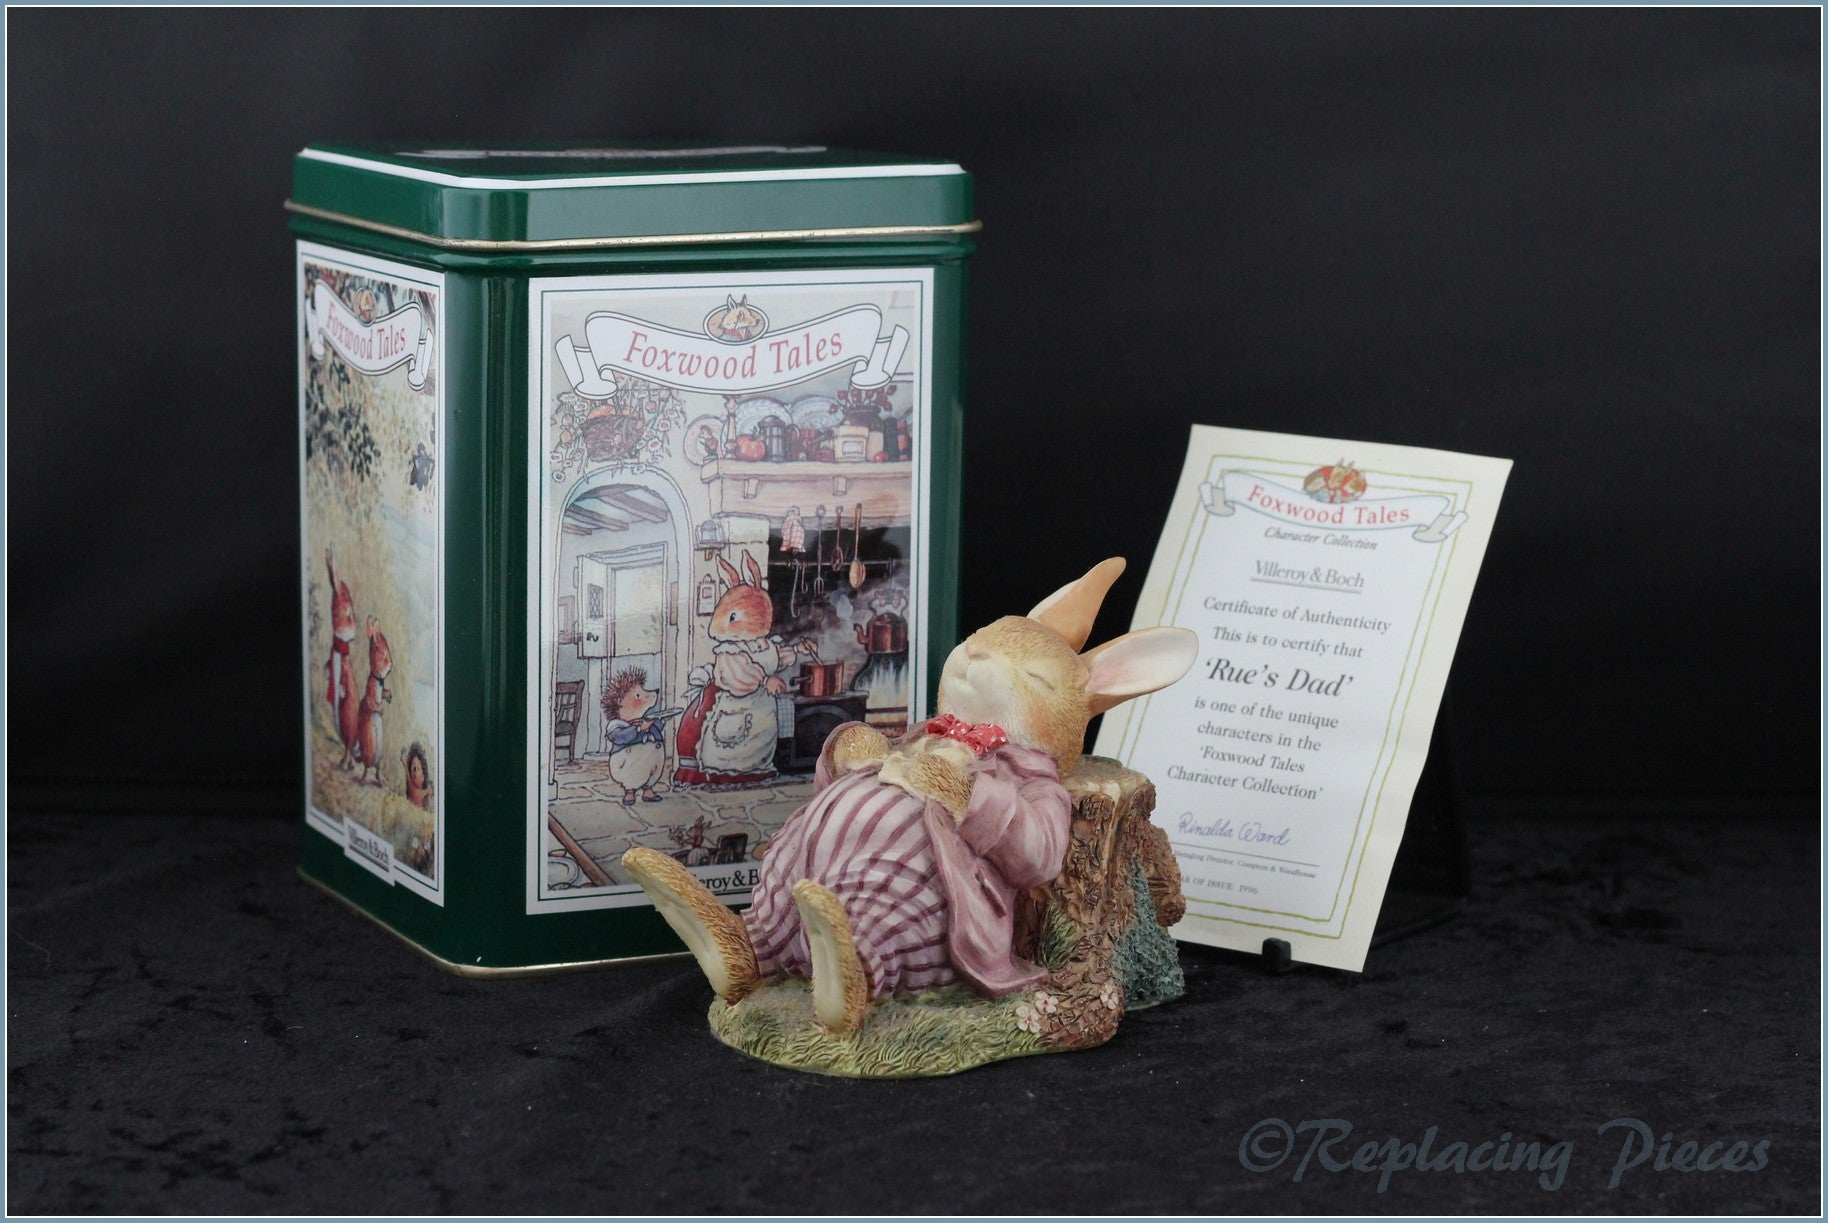 Villeroy & Boch - Foxwood Tales Figurines - No.11 Rue's Dad